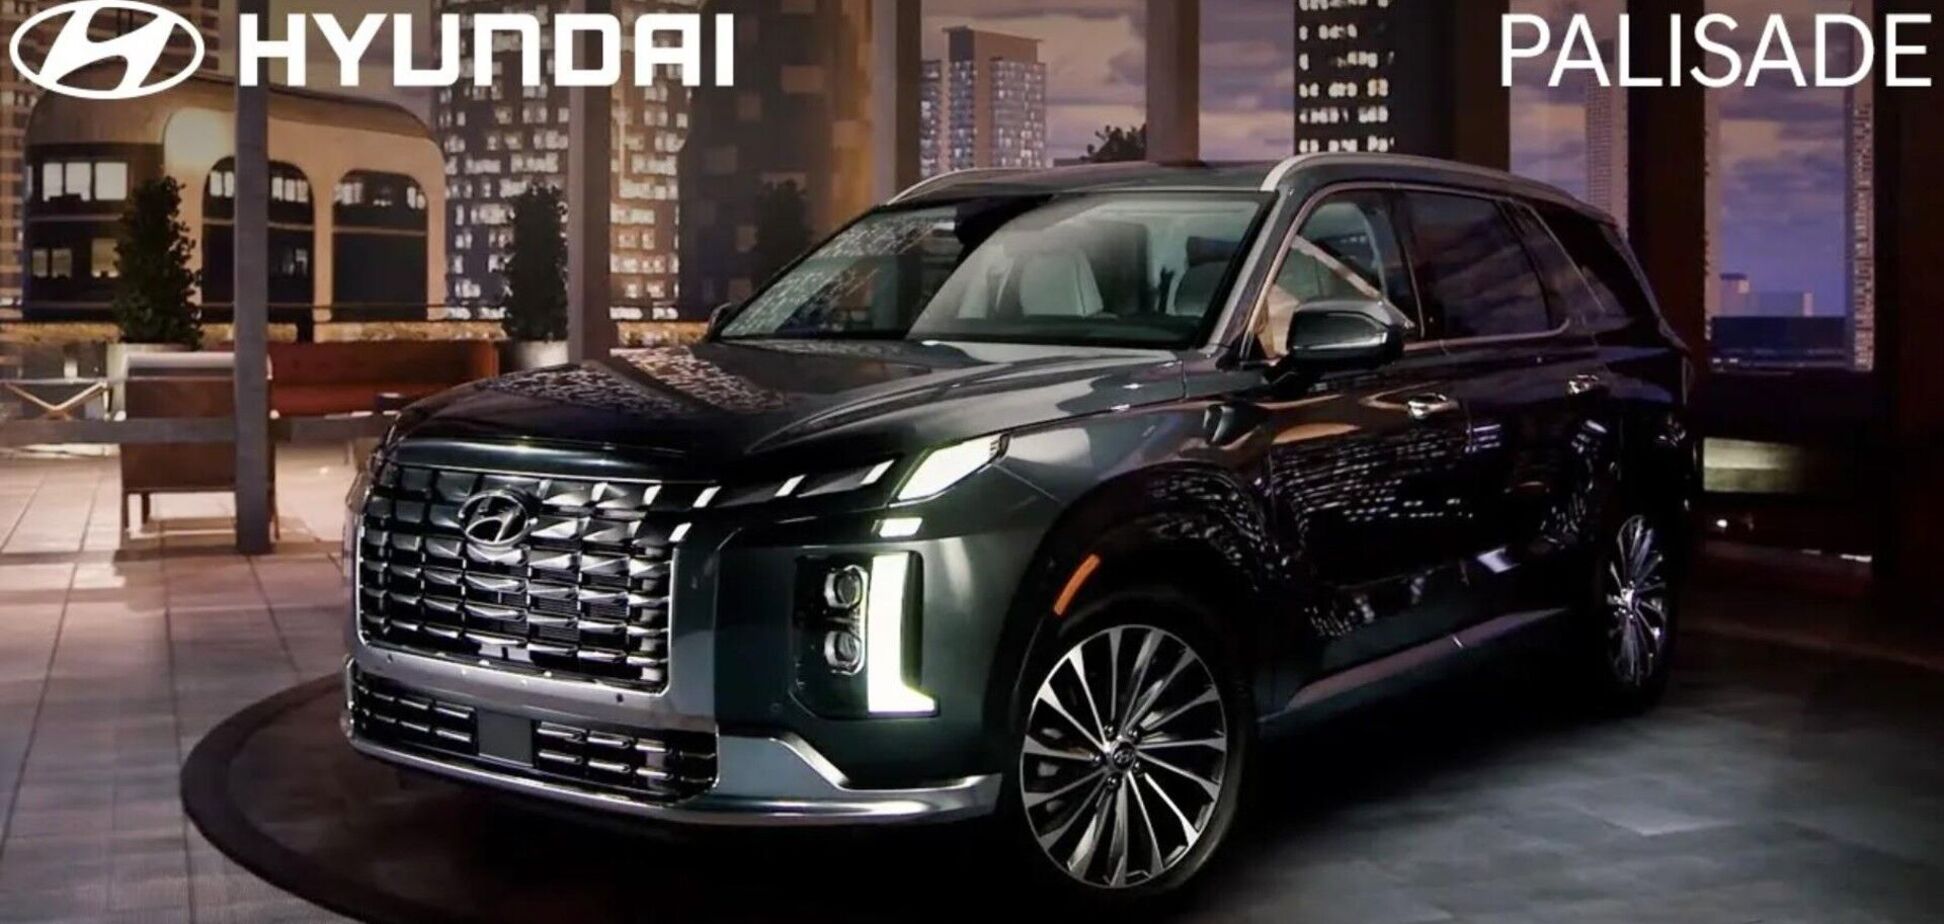 Відео з новим Hyundai Palisade випадково розсекретили до прем'єри